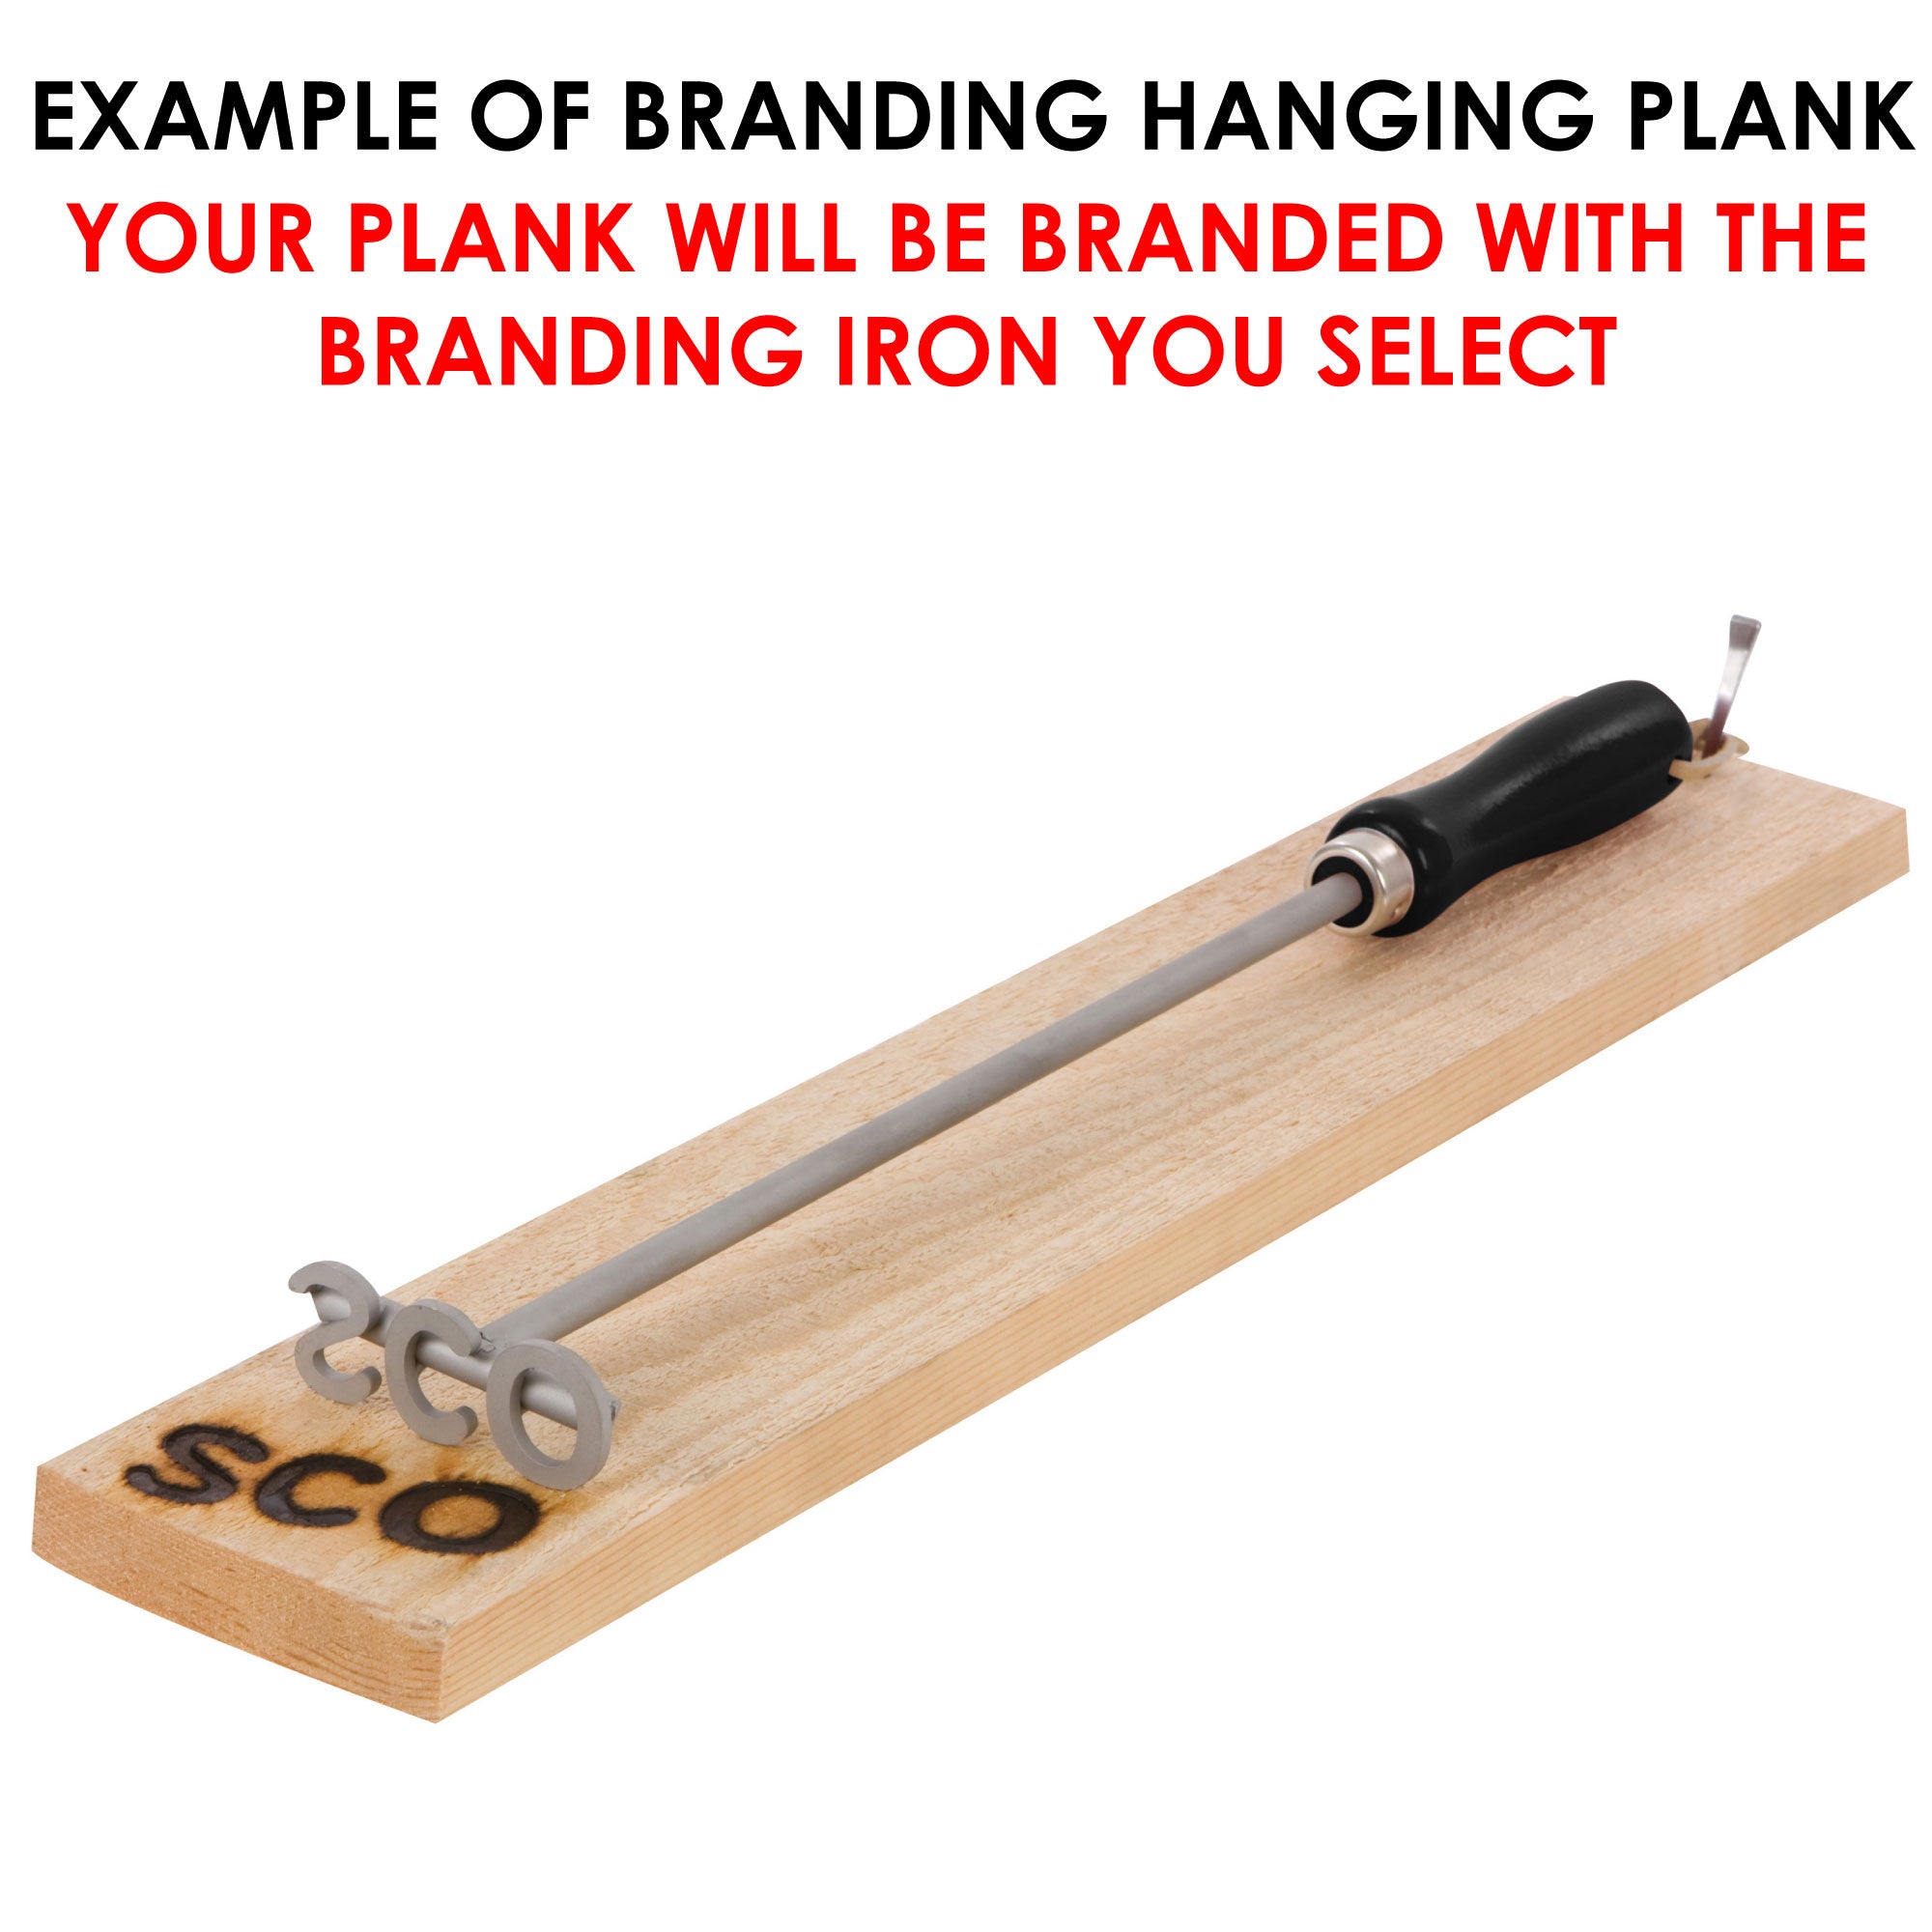 Branding Iron